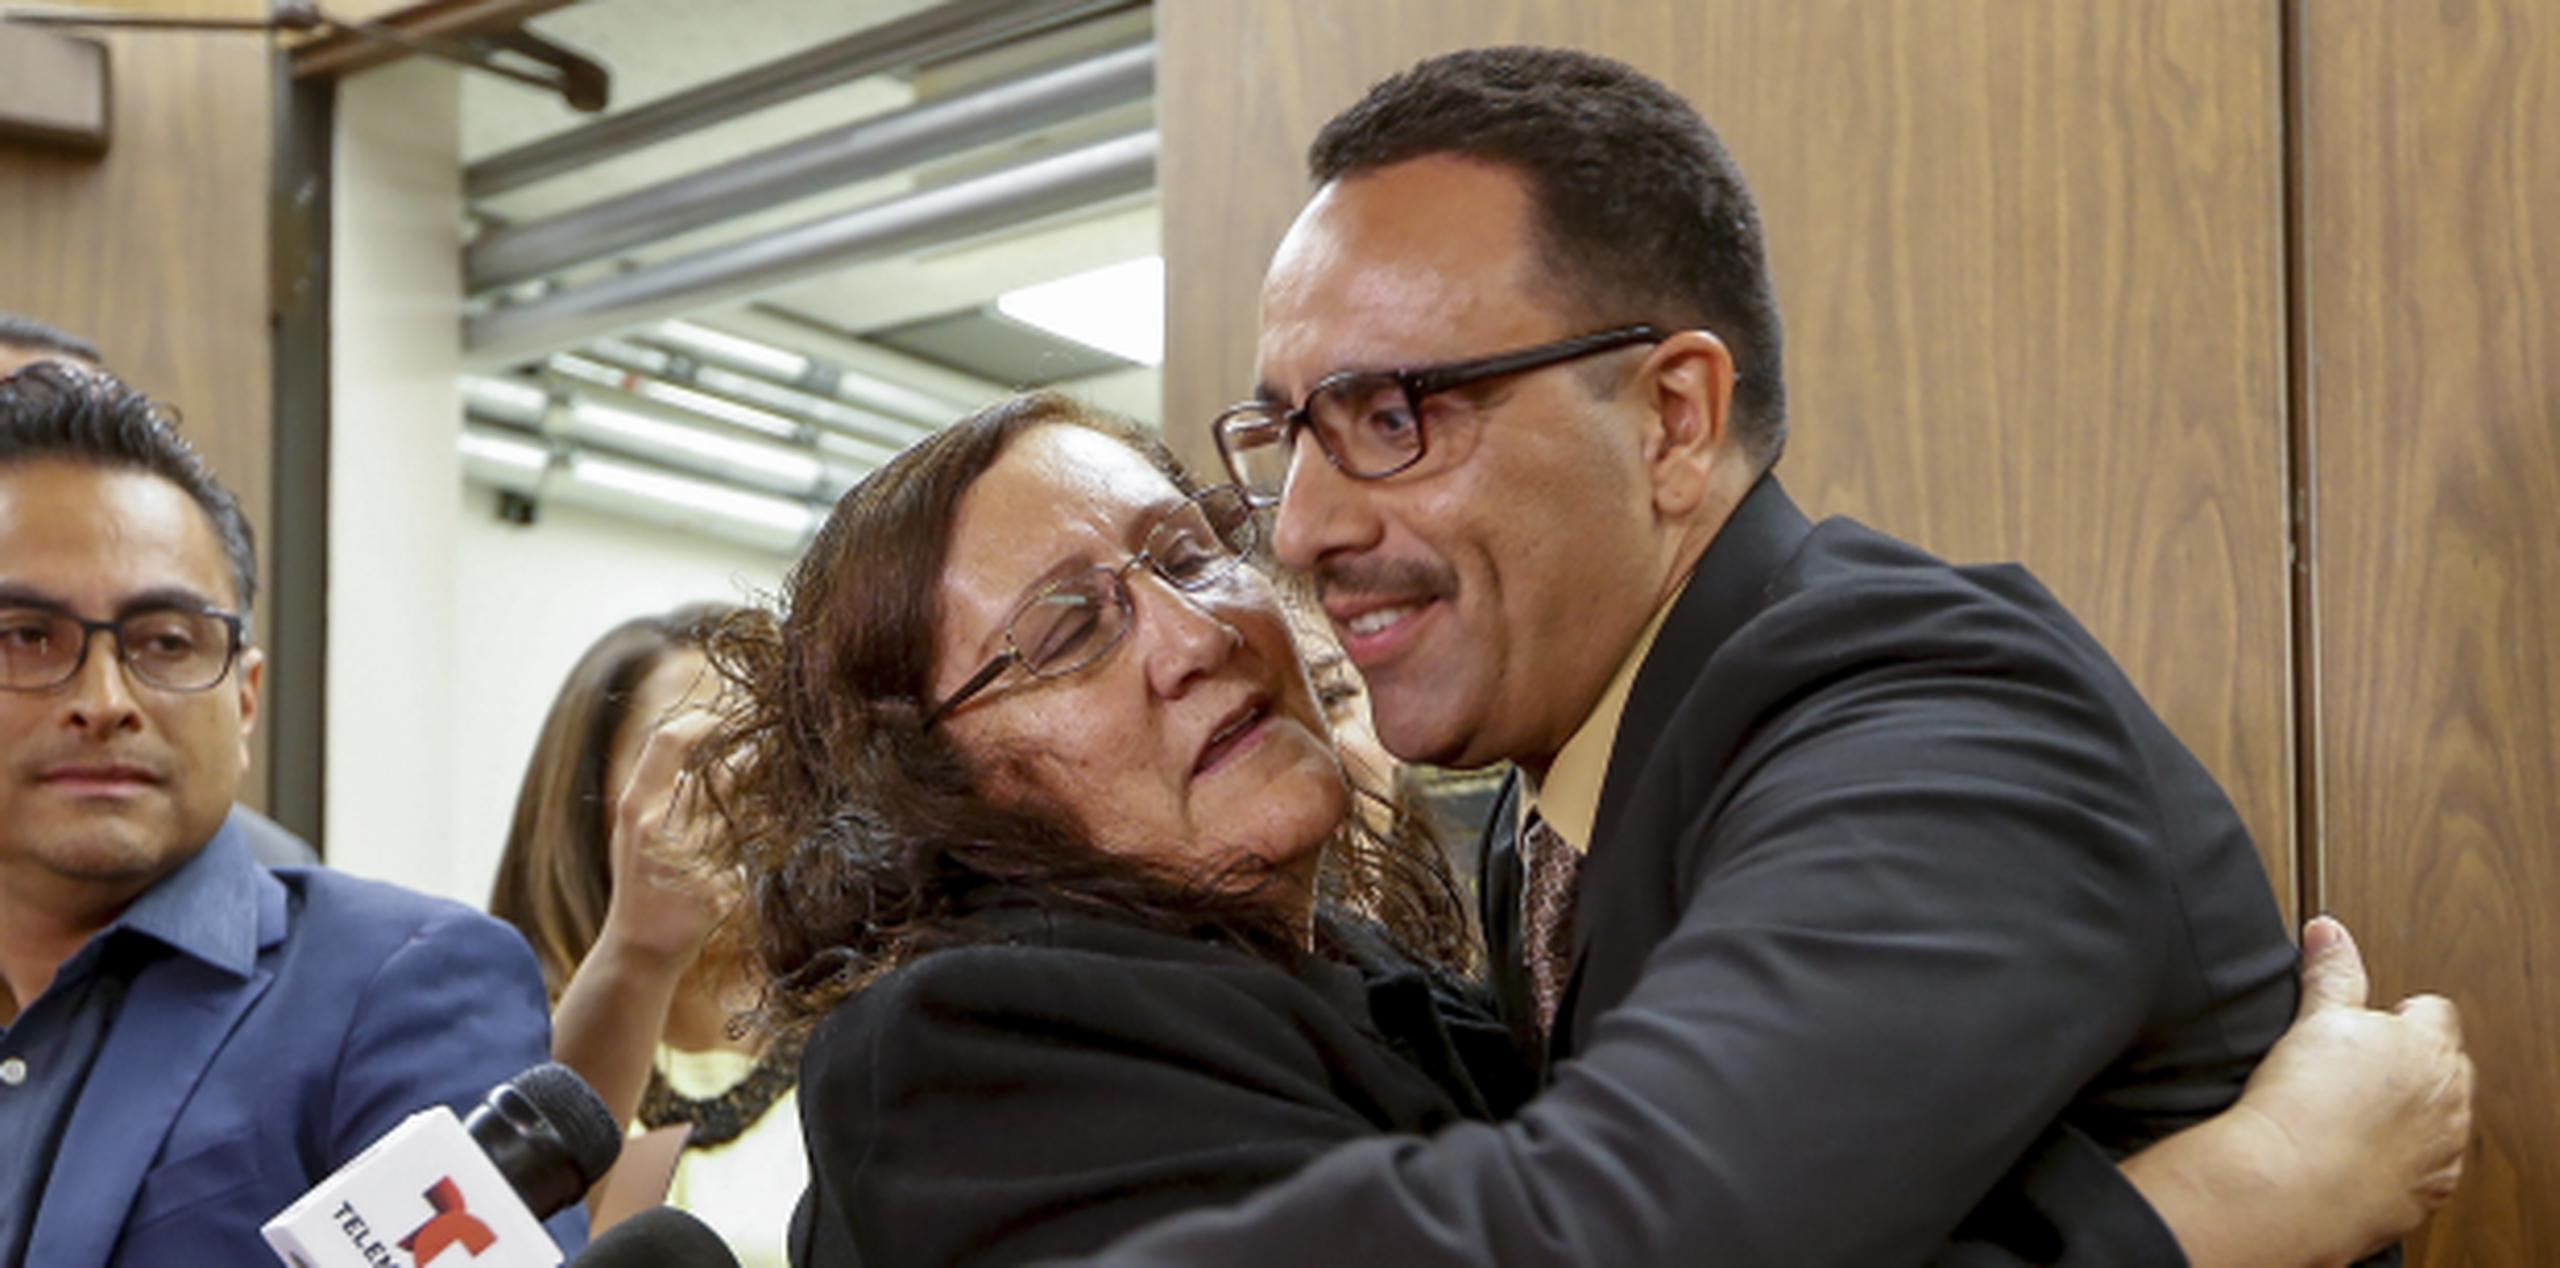 Marco Contreras abraza a su madre, María Contreras, mientras sus abogados aplauden después de una audiencia en una corte de Los Ángeles durante la cual fue declarado inocente. (AP / Damian Dovarganes)